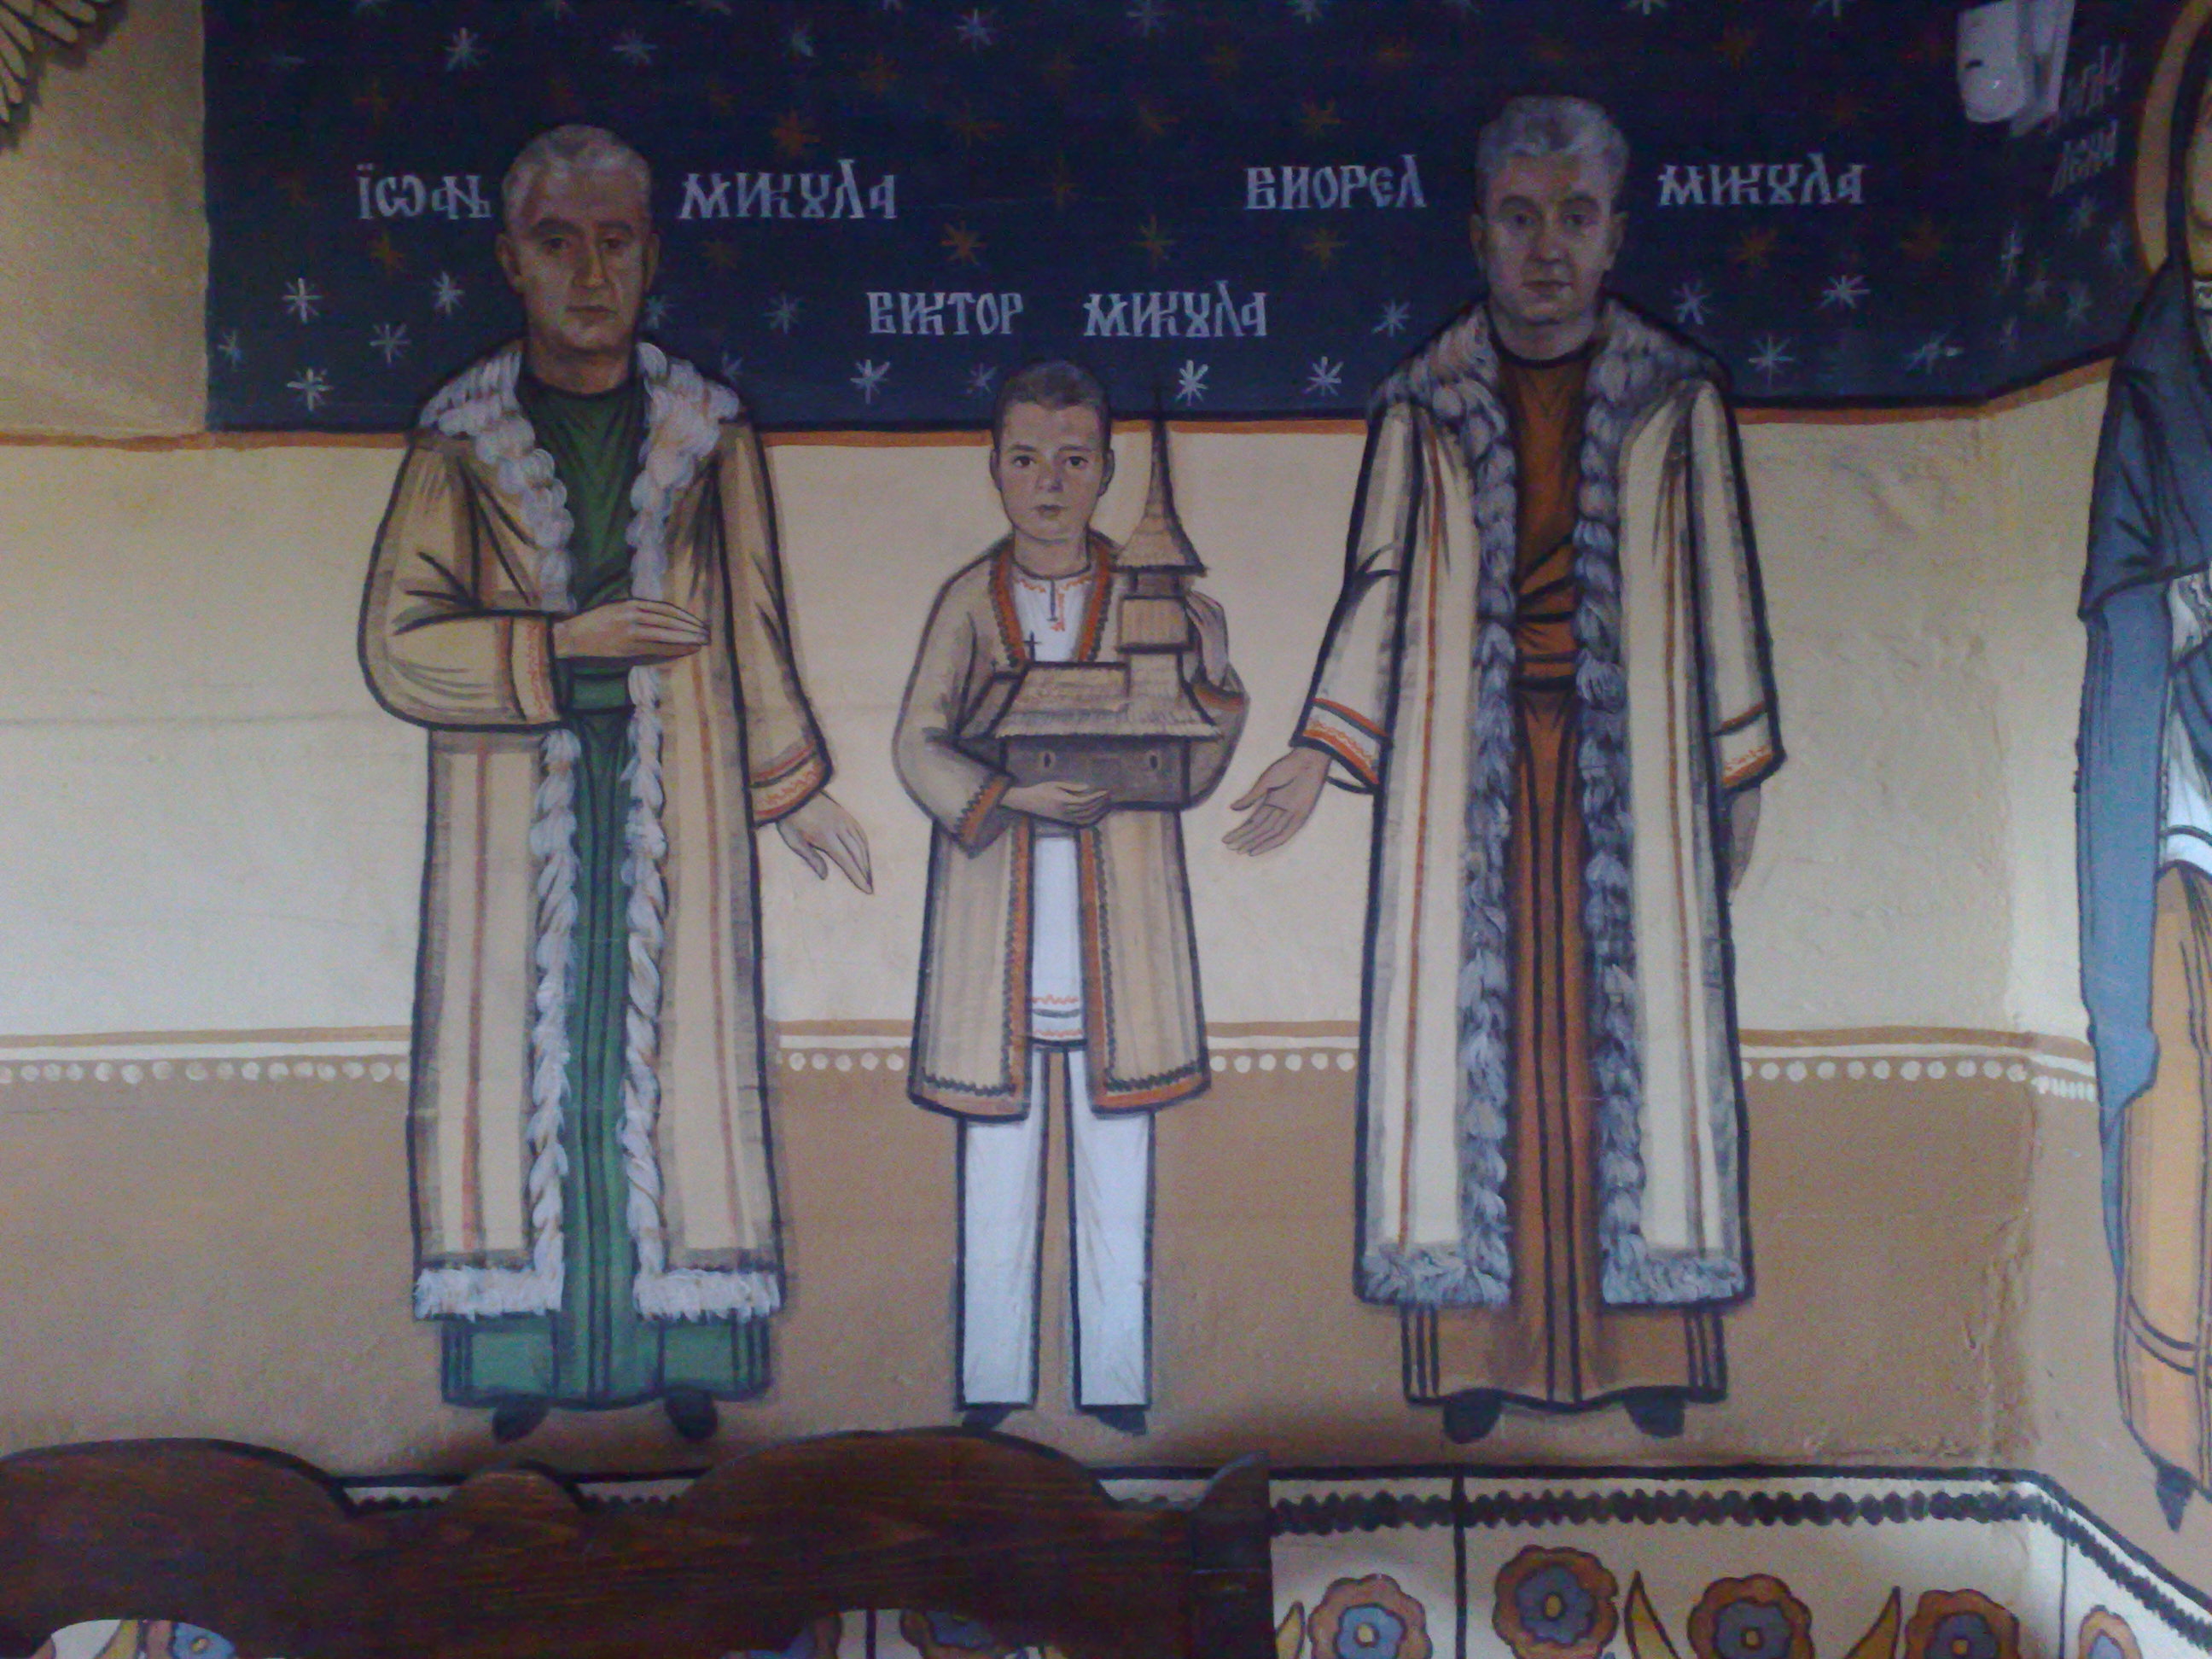 Fratii Viorel si Ioan Micula, impreuna cu “printisorul” Victoras, au sponsorizat ridicarea bisericii ortodoxe din Stei, Bihor.